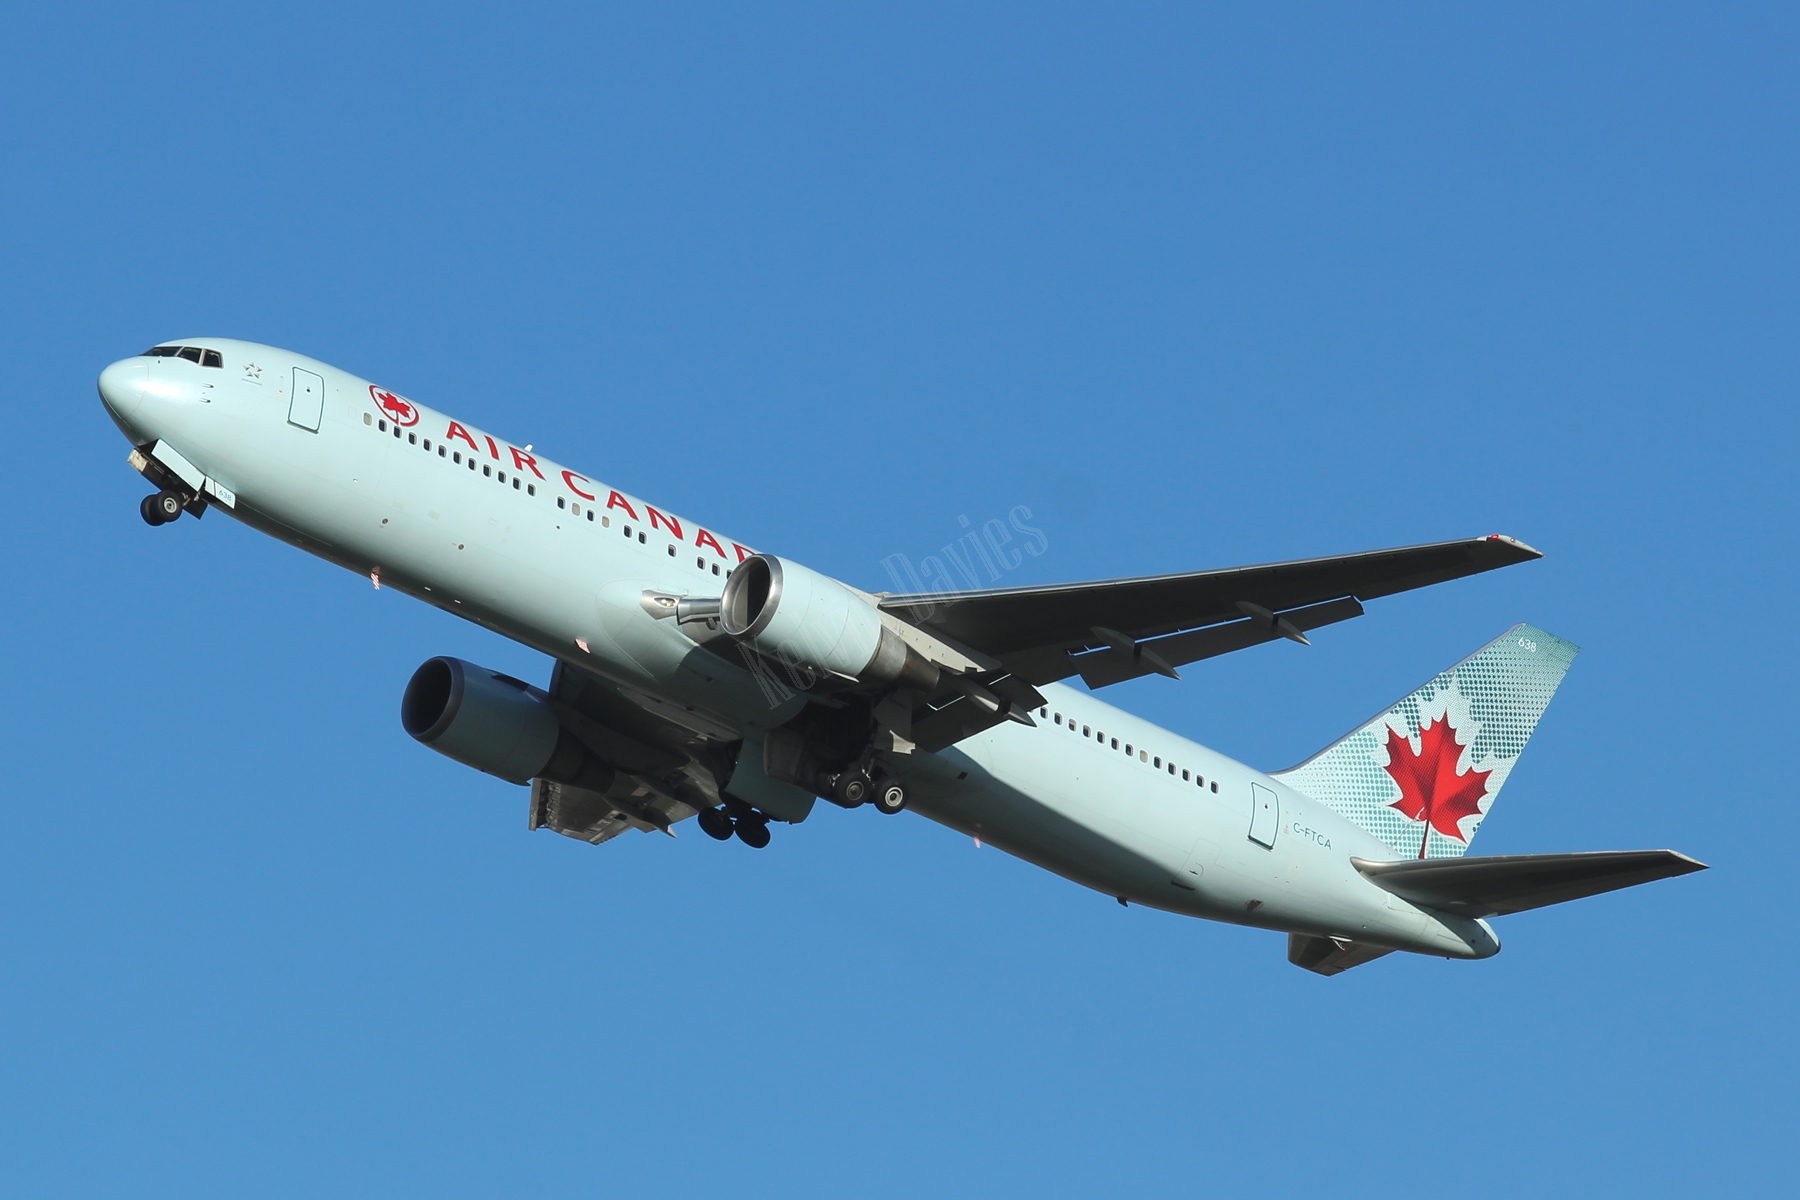 Air Canada 767 C-FTCA